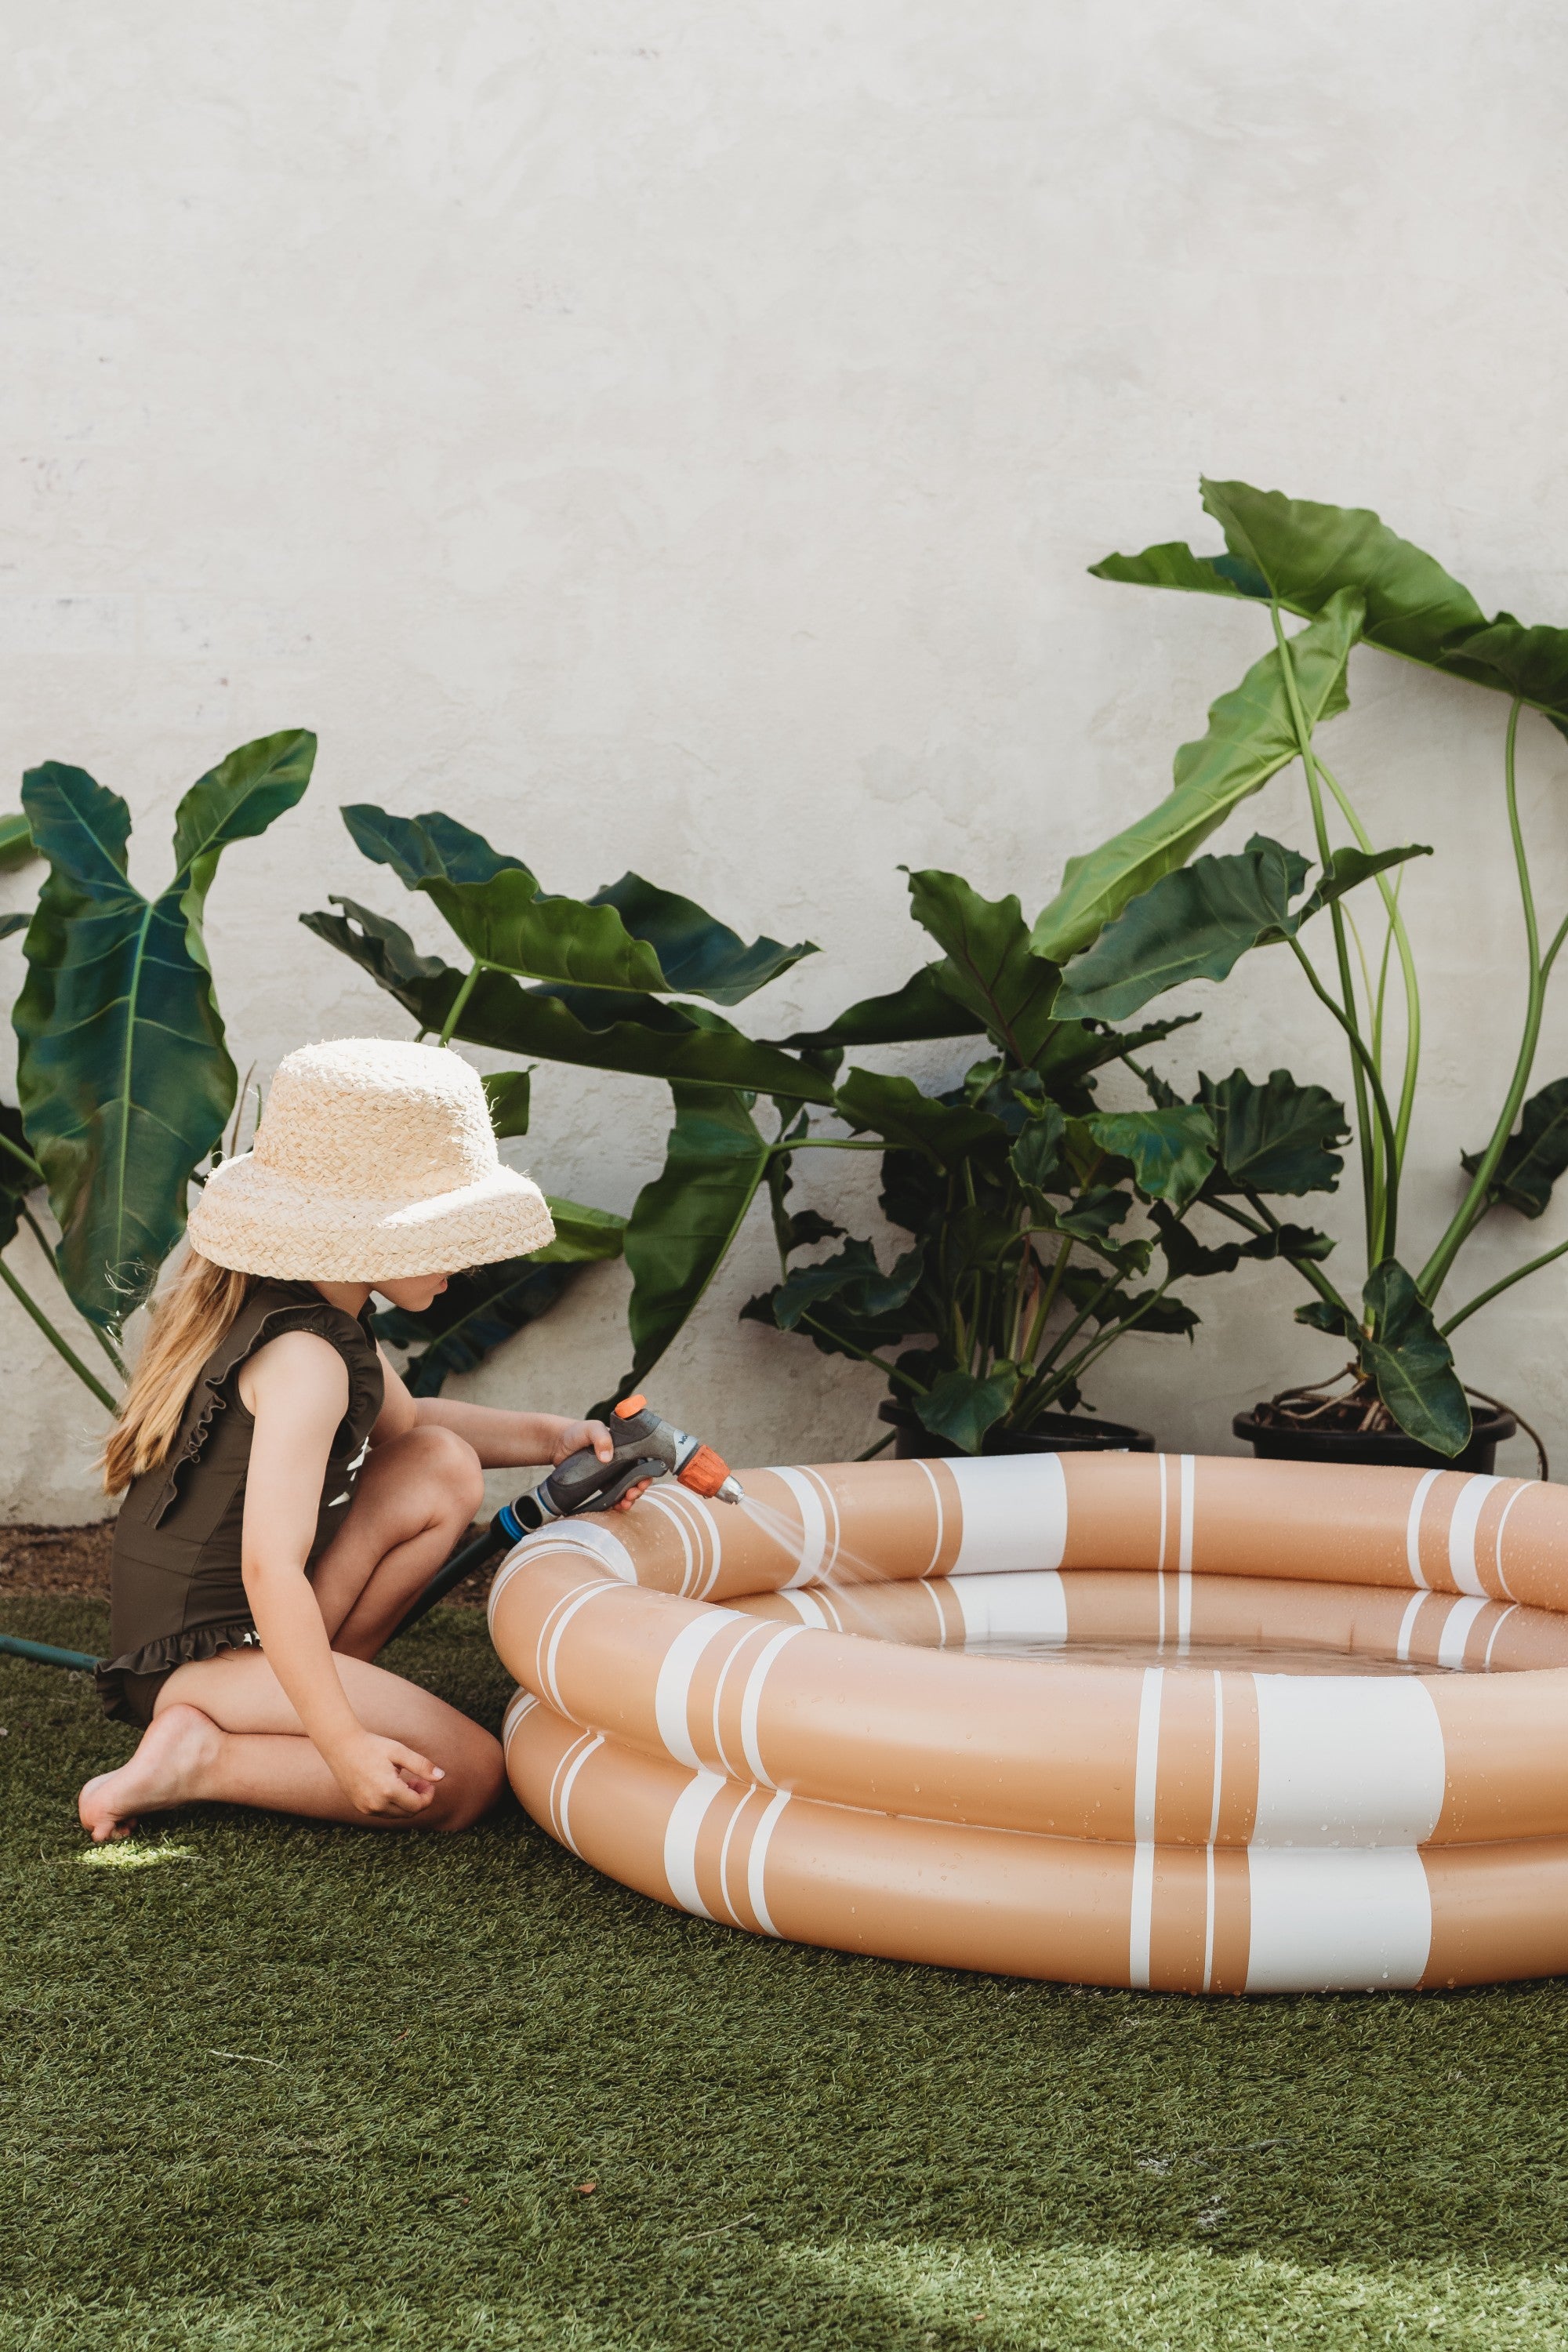 Cinnamon Stripe Inflatable Pool – Hello Samah